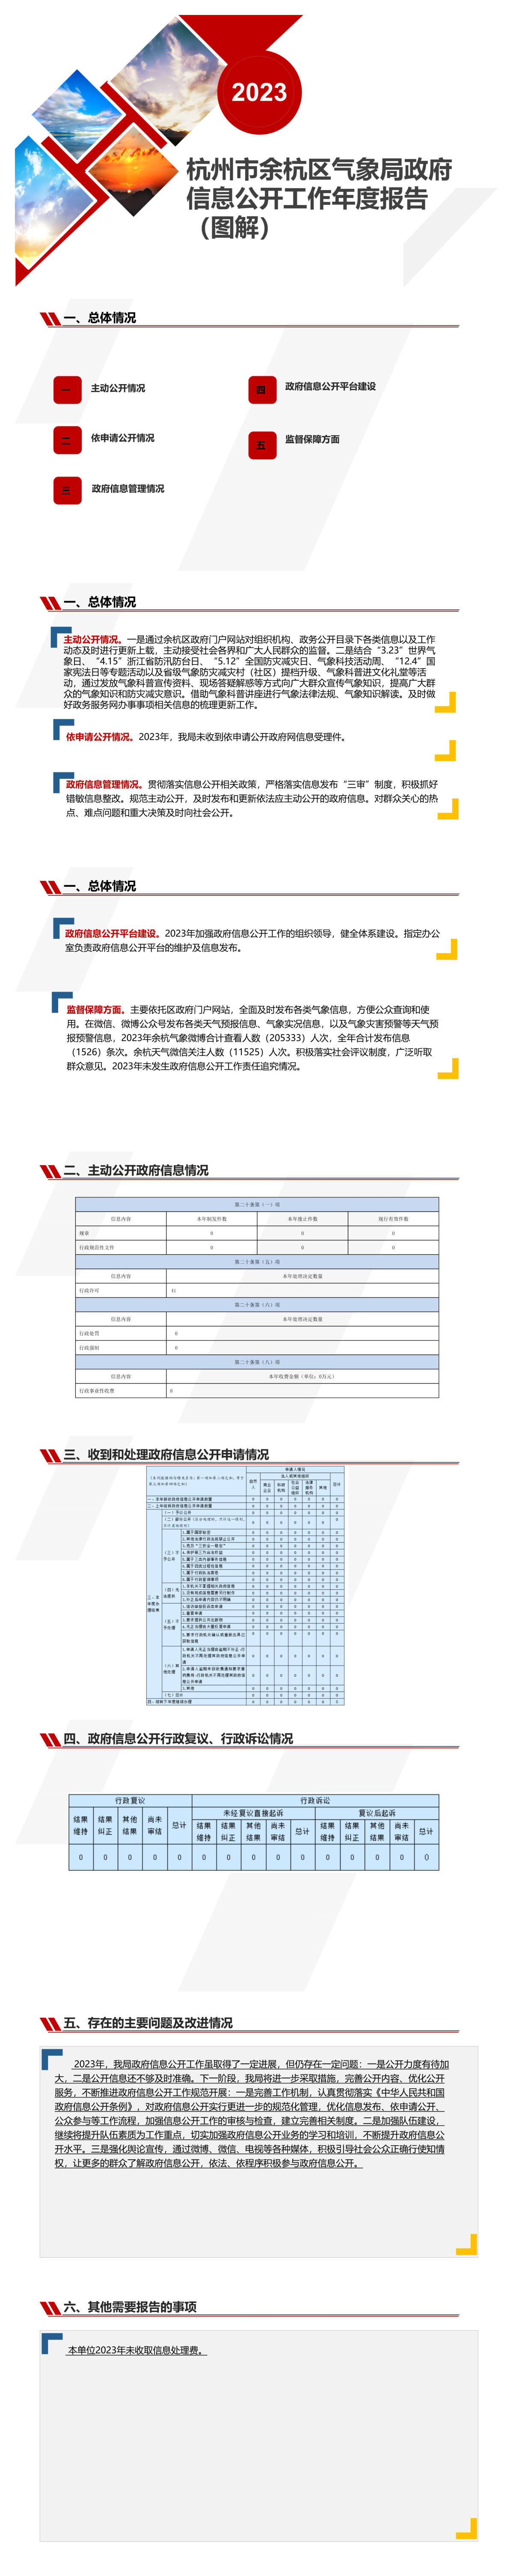 杭州市余杭区气象局2023年政府信息公开工作年度报告新.png